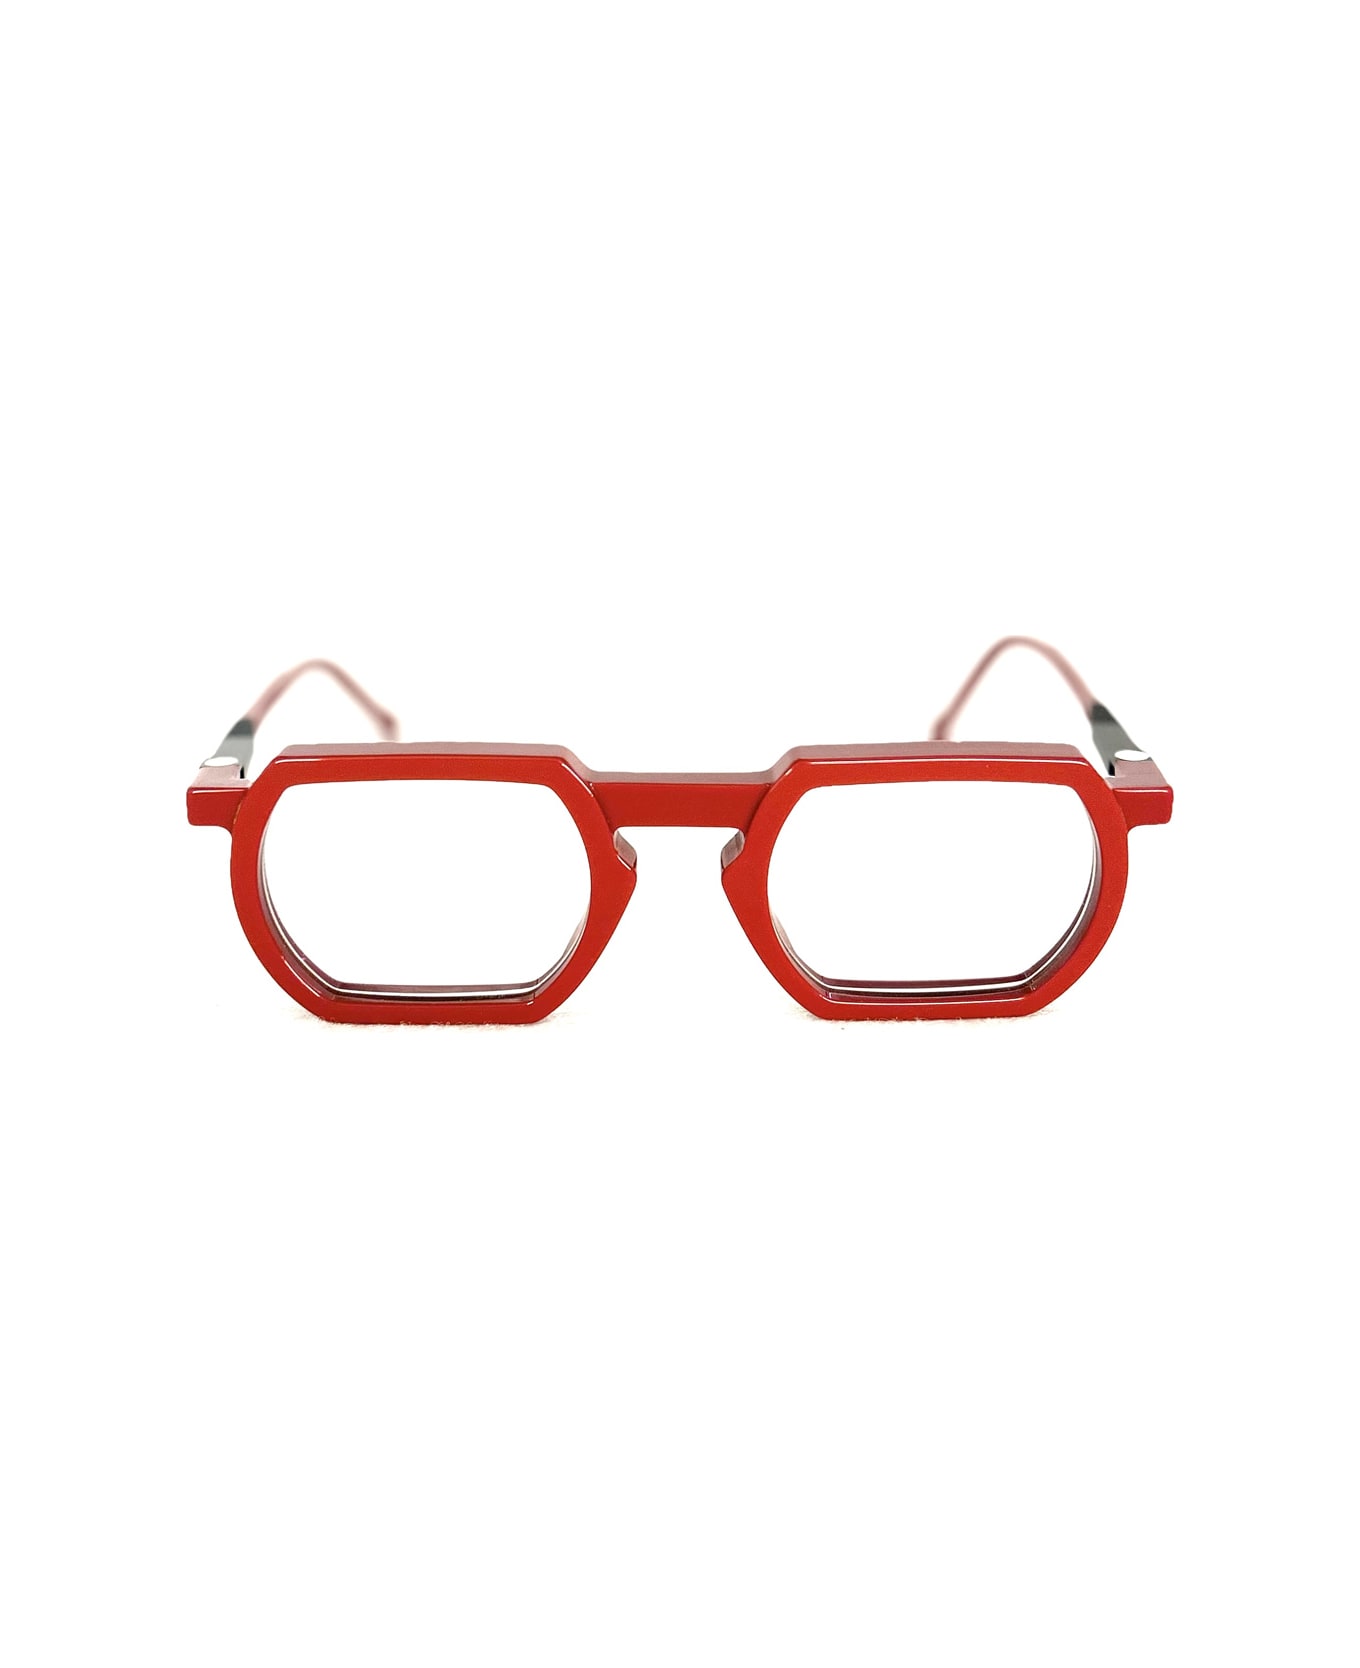 VAVA Wl0031 Red Glasses - Rosso